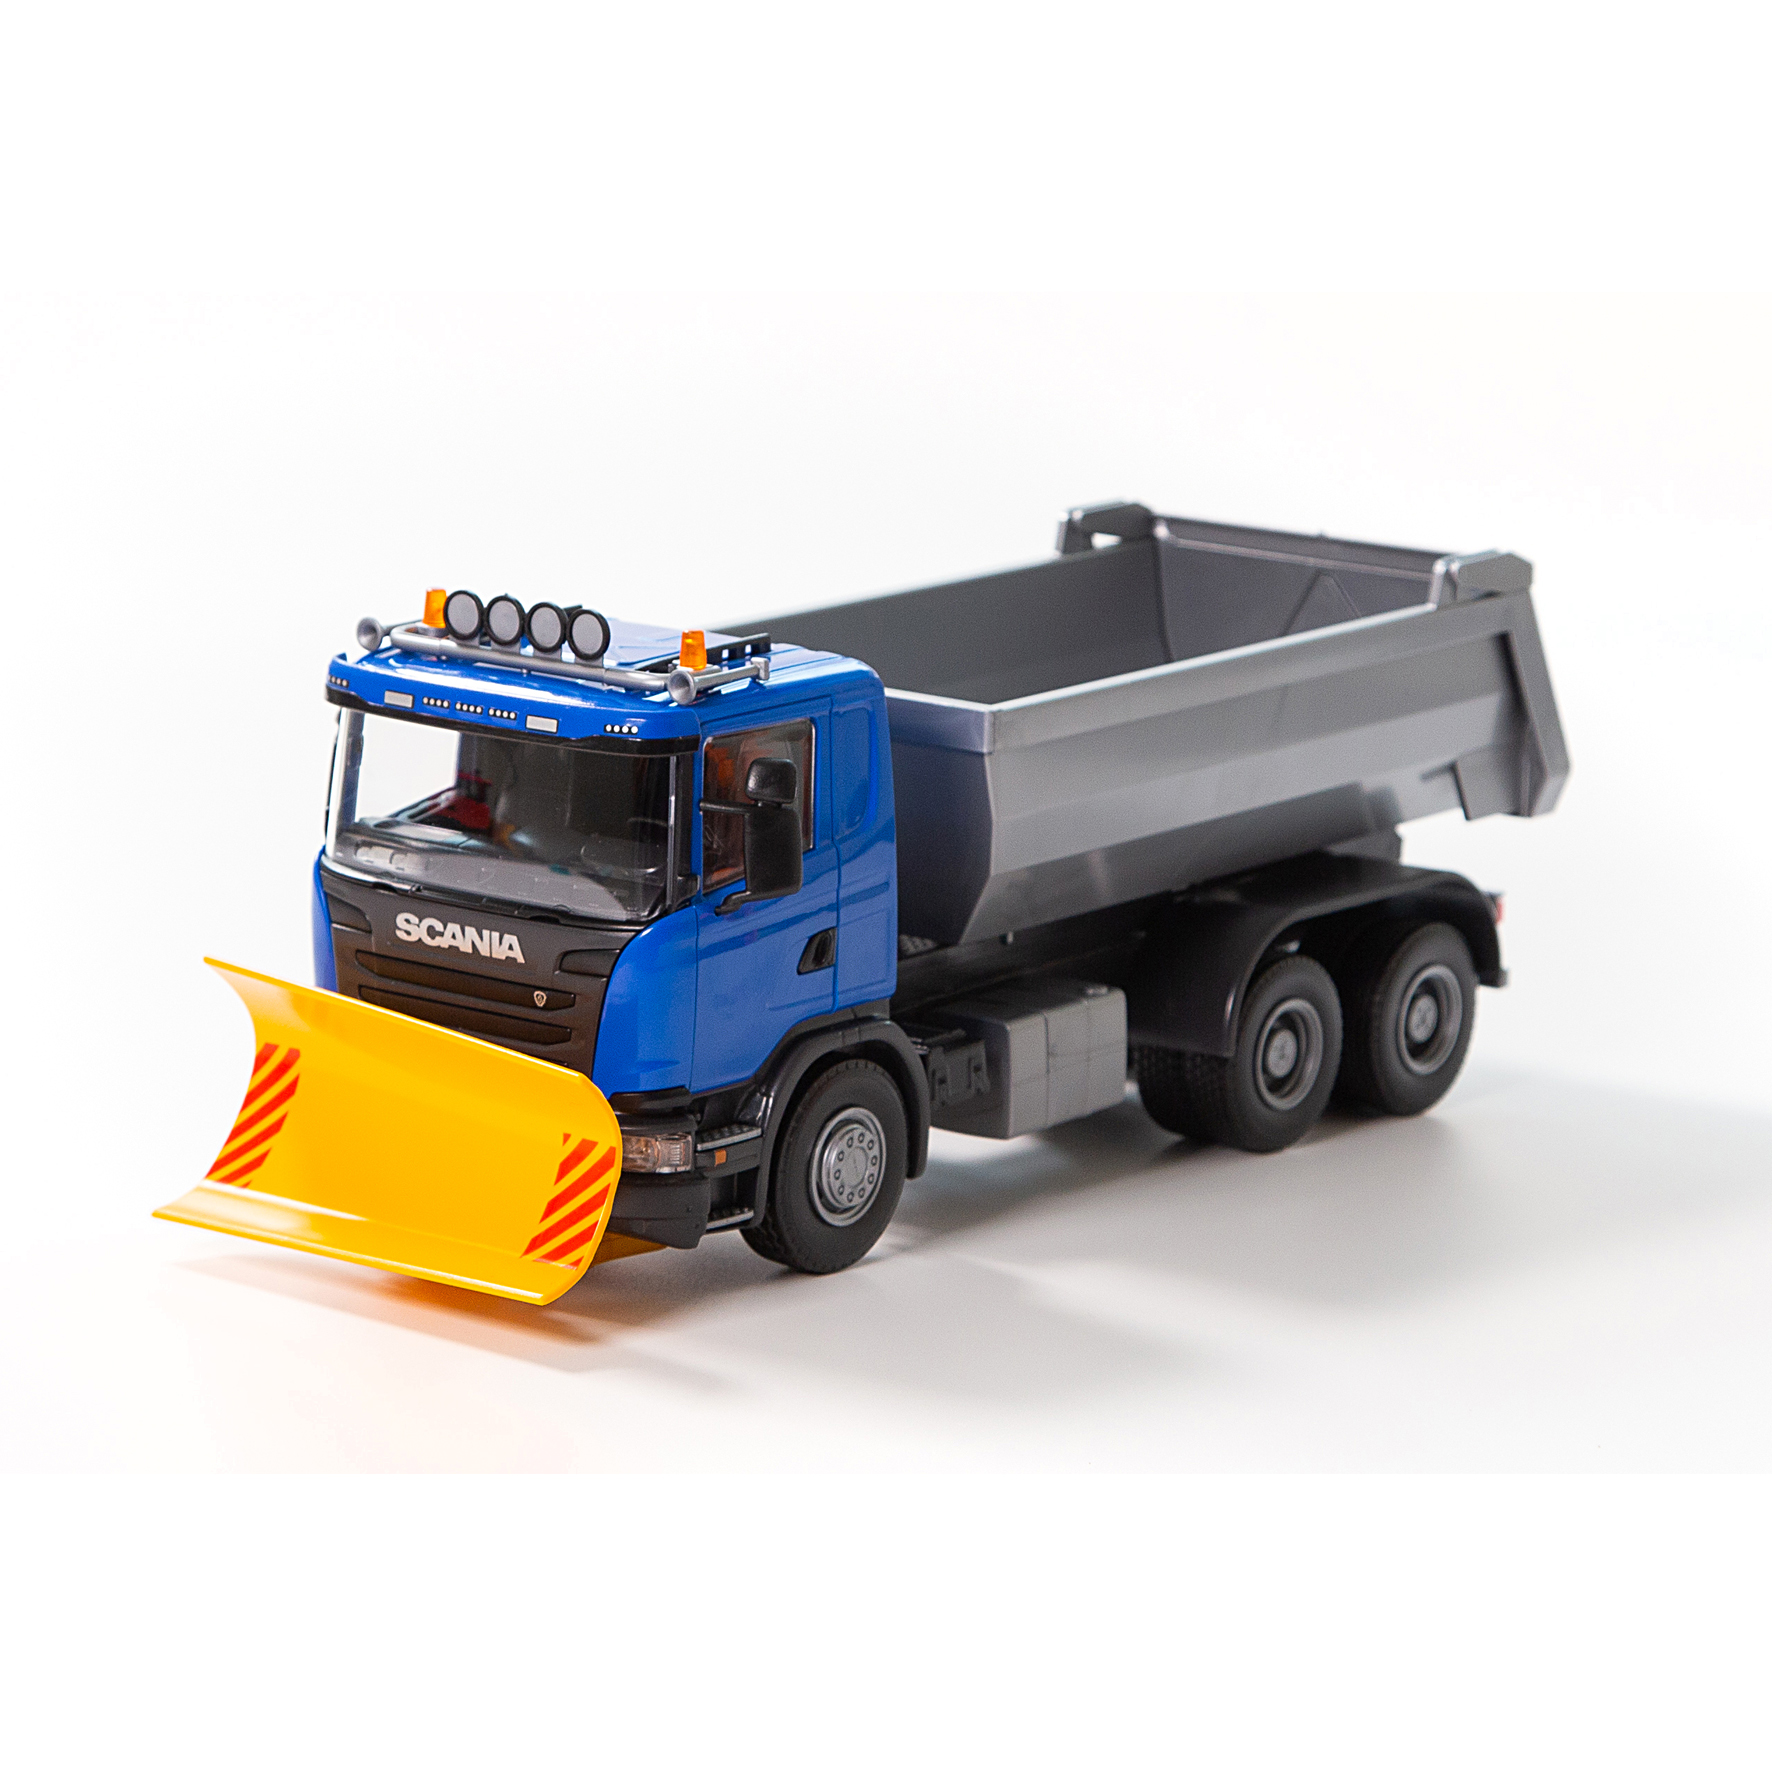 Työajoneuvot emek toy car tipper with plow scania blue 1:25